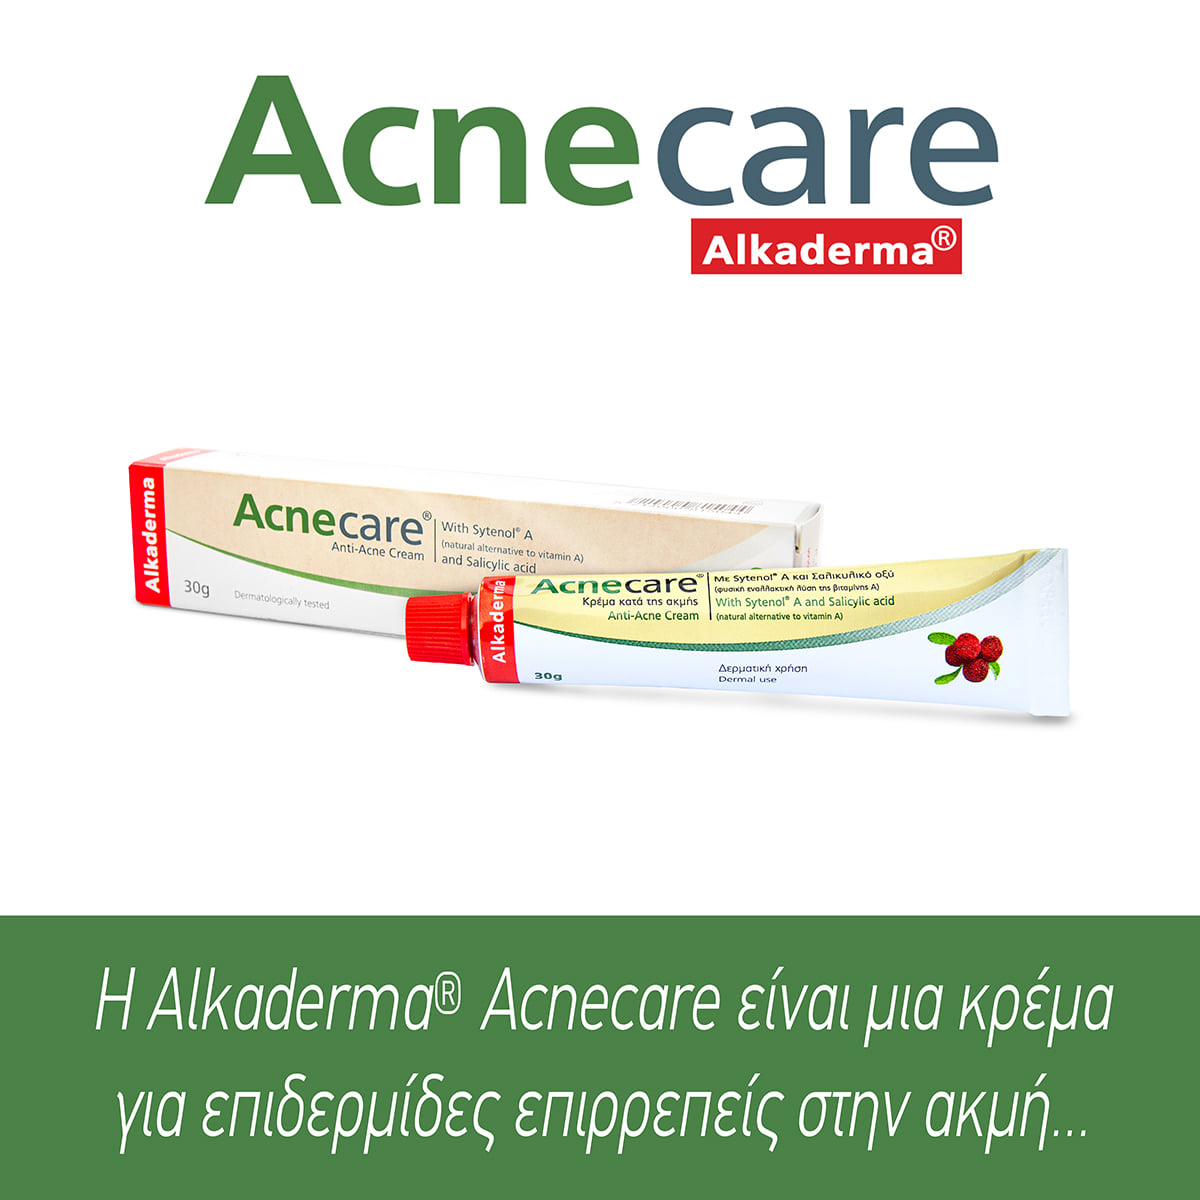 Μεγάλος Διαγωνισμός Acnecare Alcaderma® από τη Synerga Pharmaceuticals Hellas στο Facebook - Λήγει 9 Ιουλίου 2021.